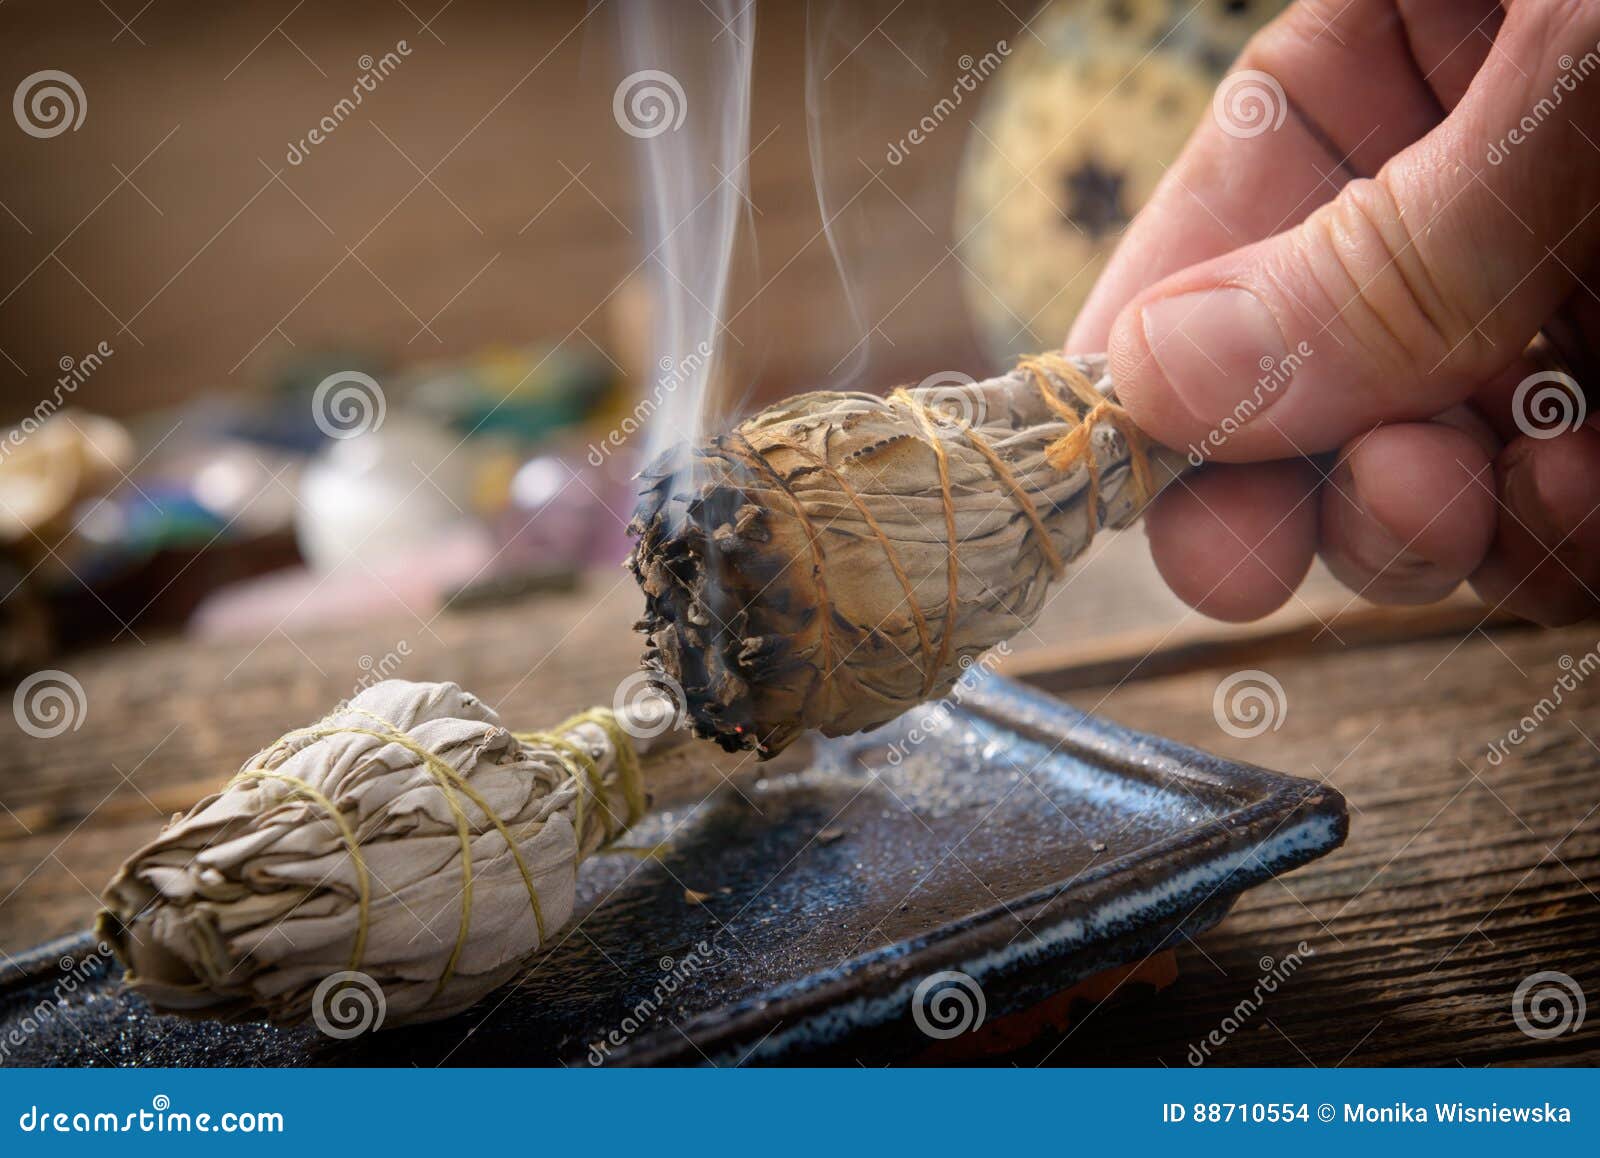 man burning white sage incense